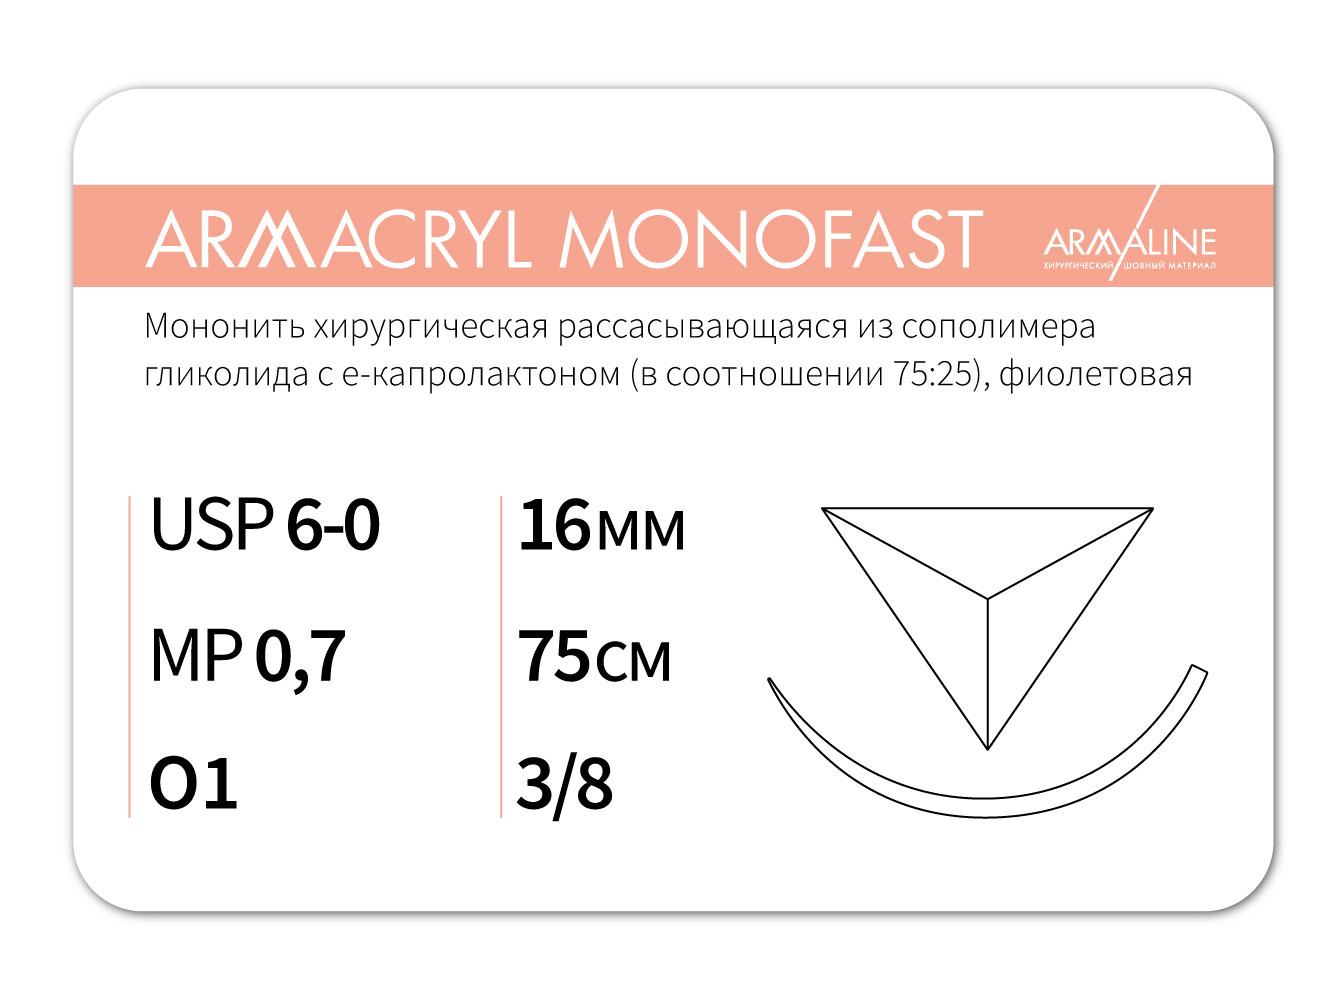 ARMACRYL MONOFAST/Армакрил монофаст (6-0) 75 см - материал хирургический шовный стерильный с атравматической обратно-режущей иглой